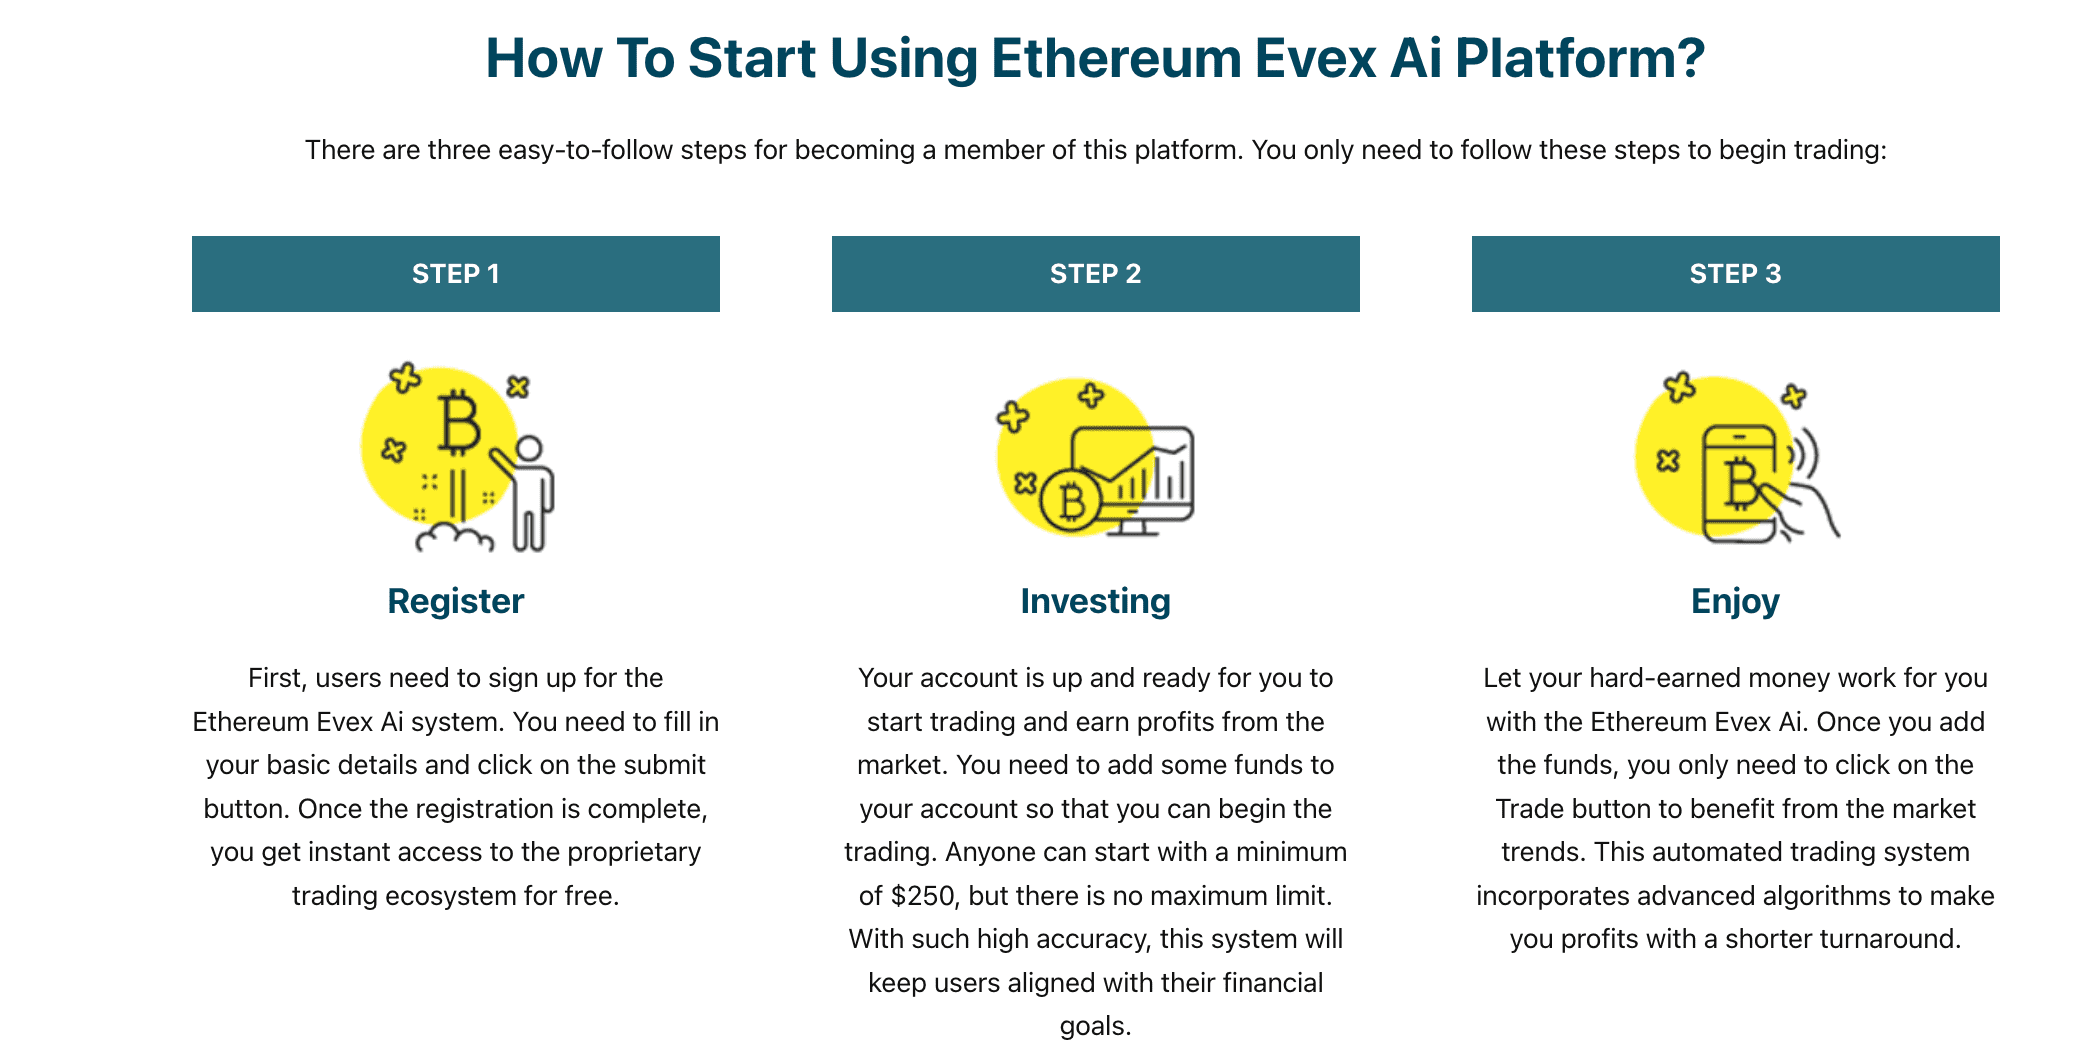 Kuidas alustada Ethereum Evex Ai platvormi kasutamist?  